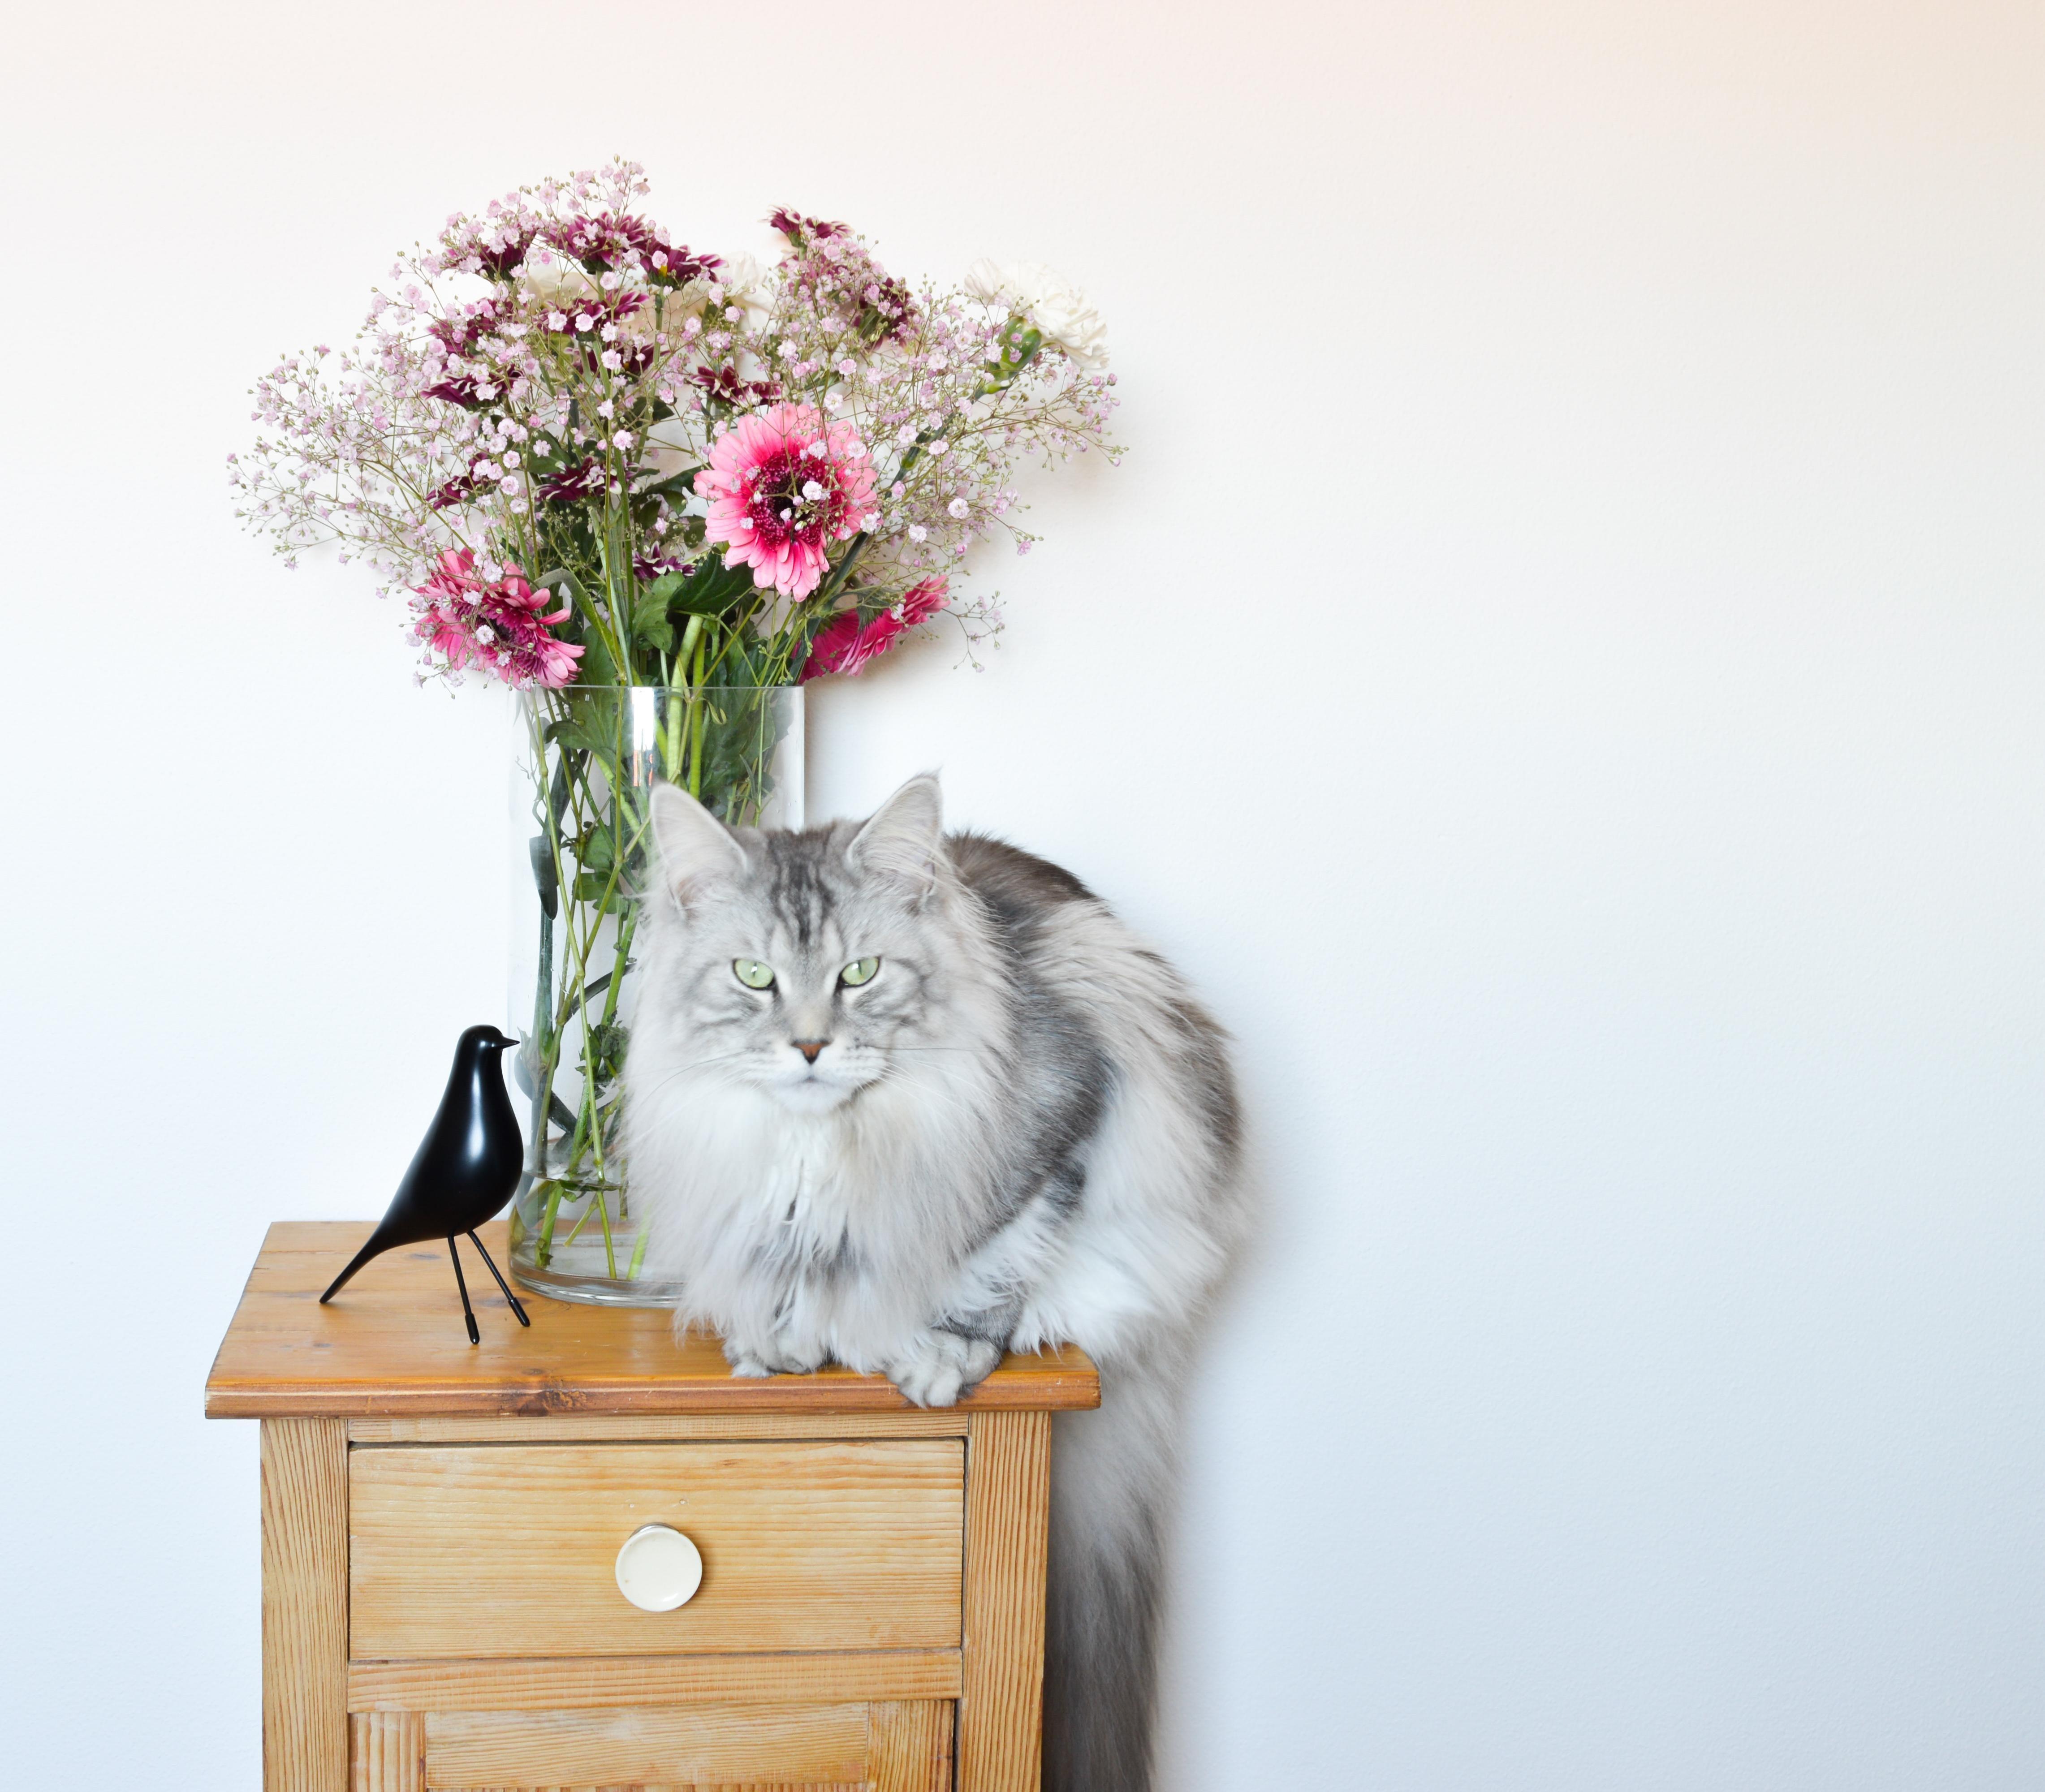 Stubenhocker
#Katze #bauernmöbel #interior #flowers #blumenstrauß #frischeblumen #frühling #happy #cat